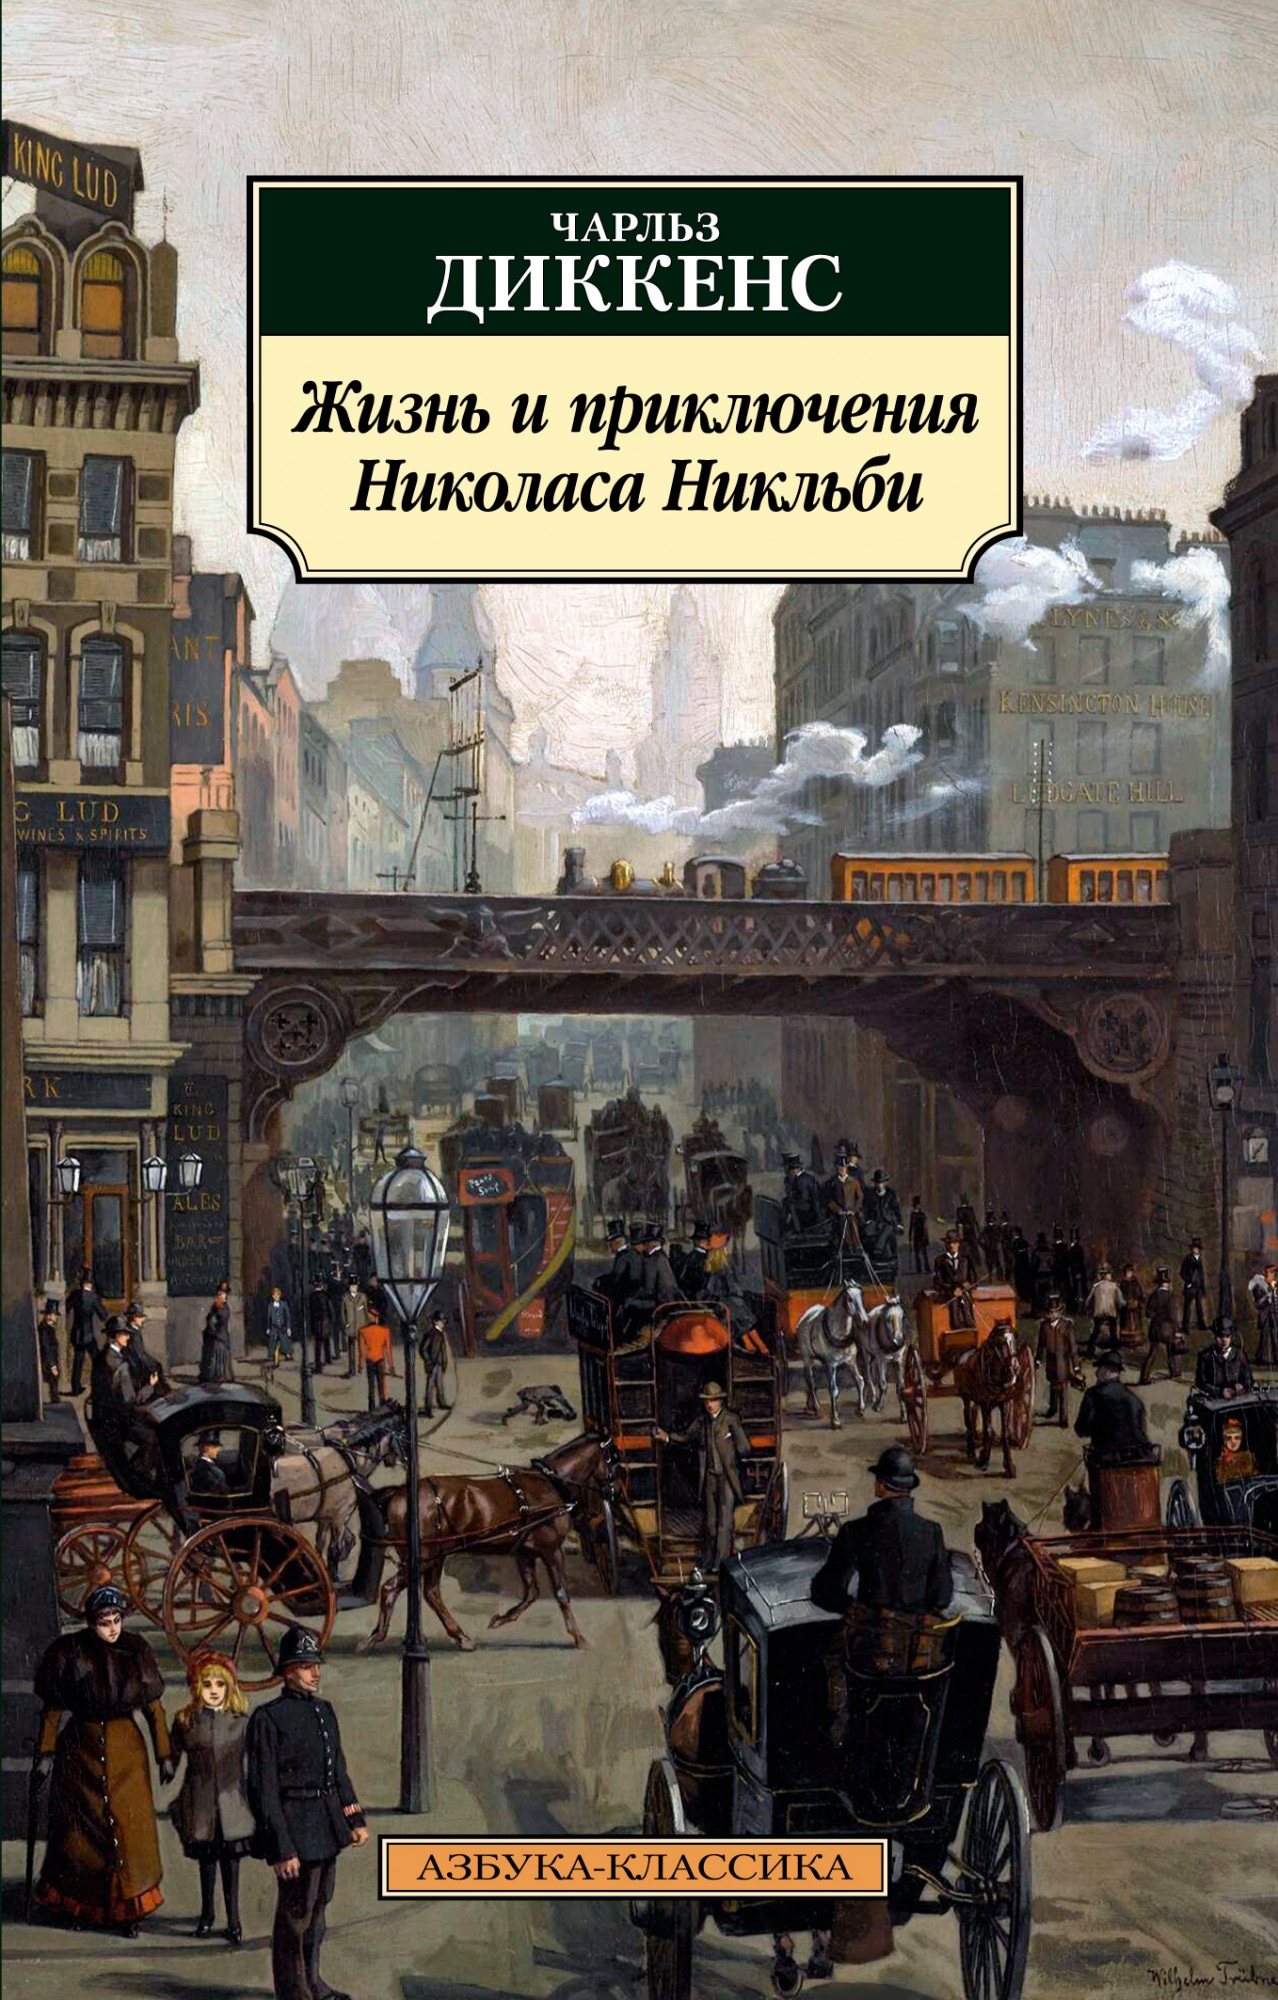 Book “Жизнь и приключения Николаса Никльби” by Чарльз Диккенс — 2021